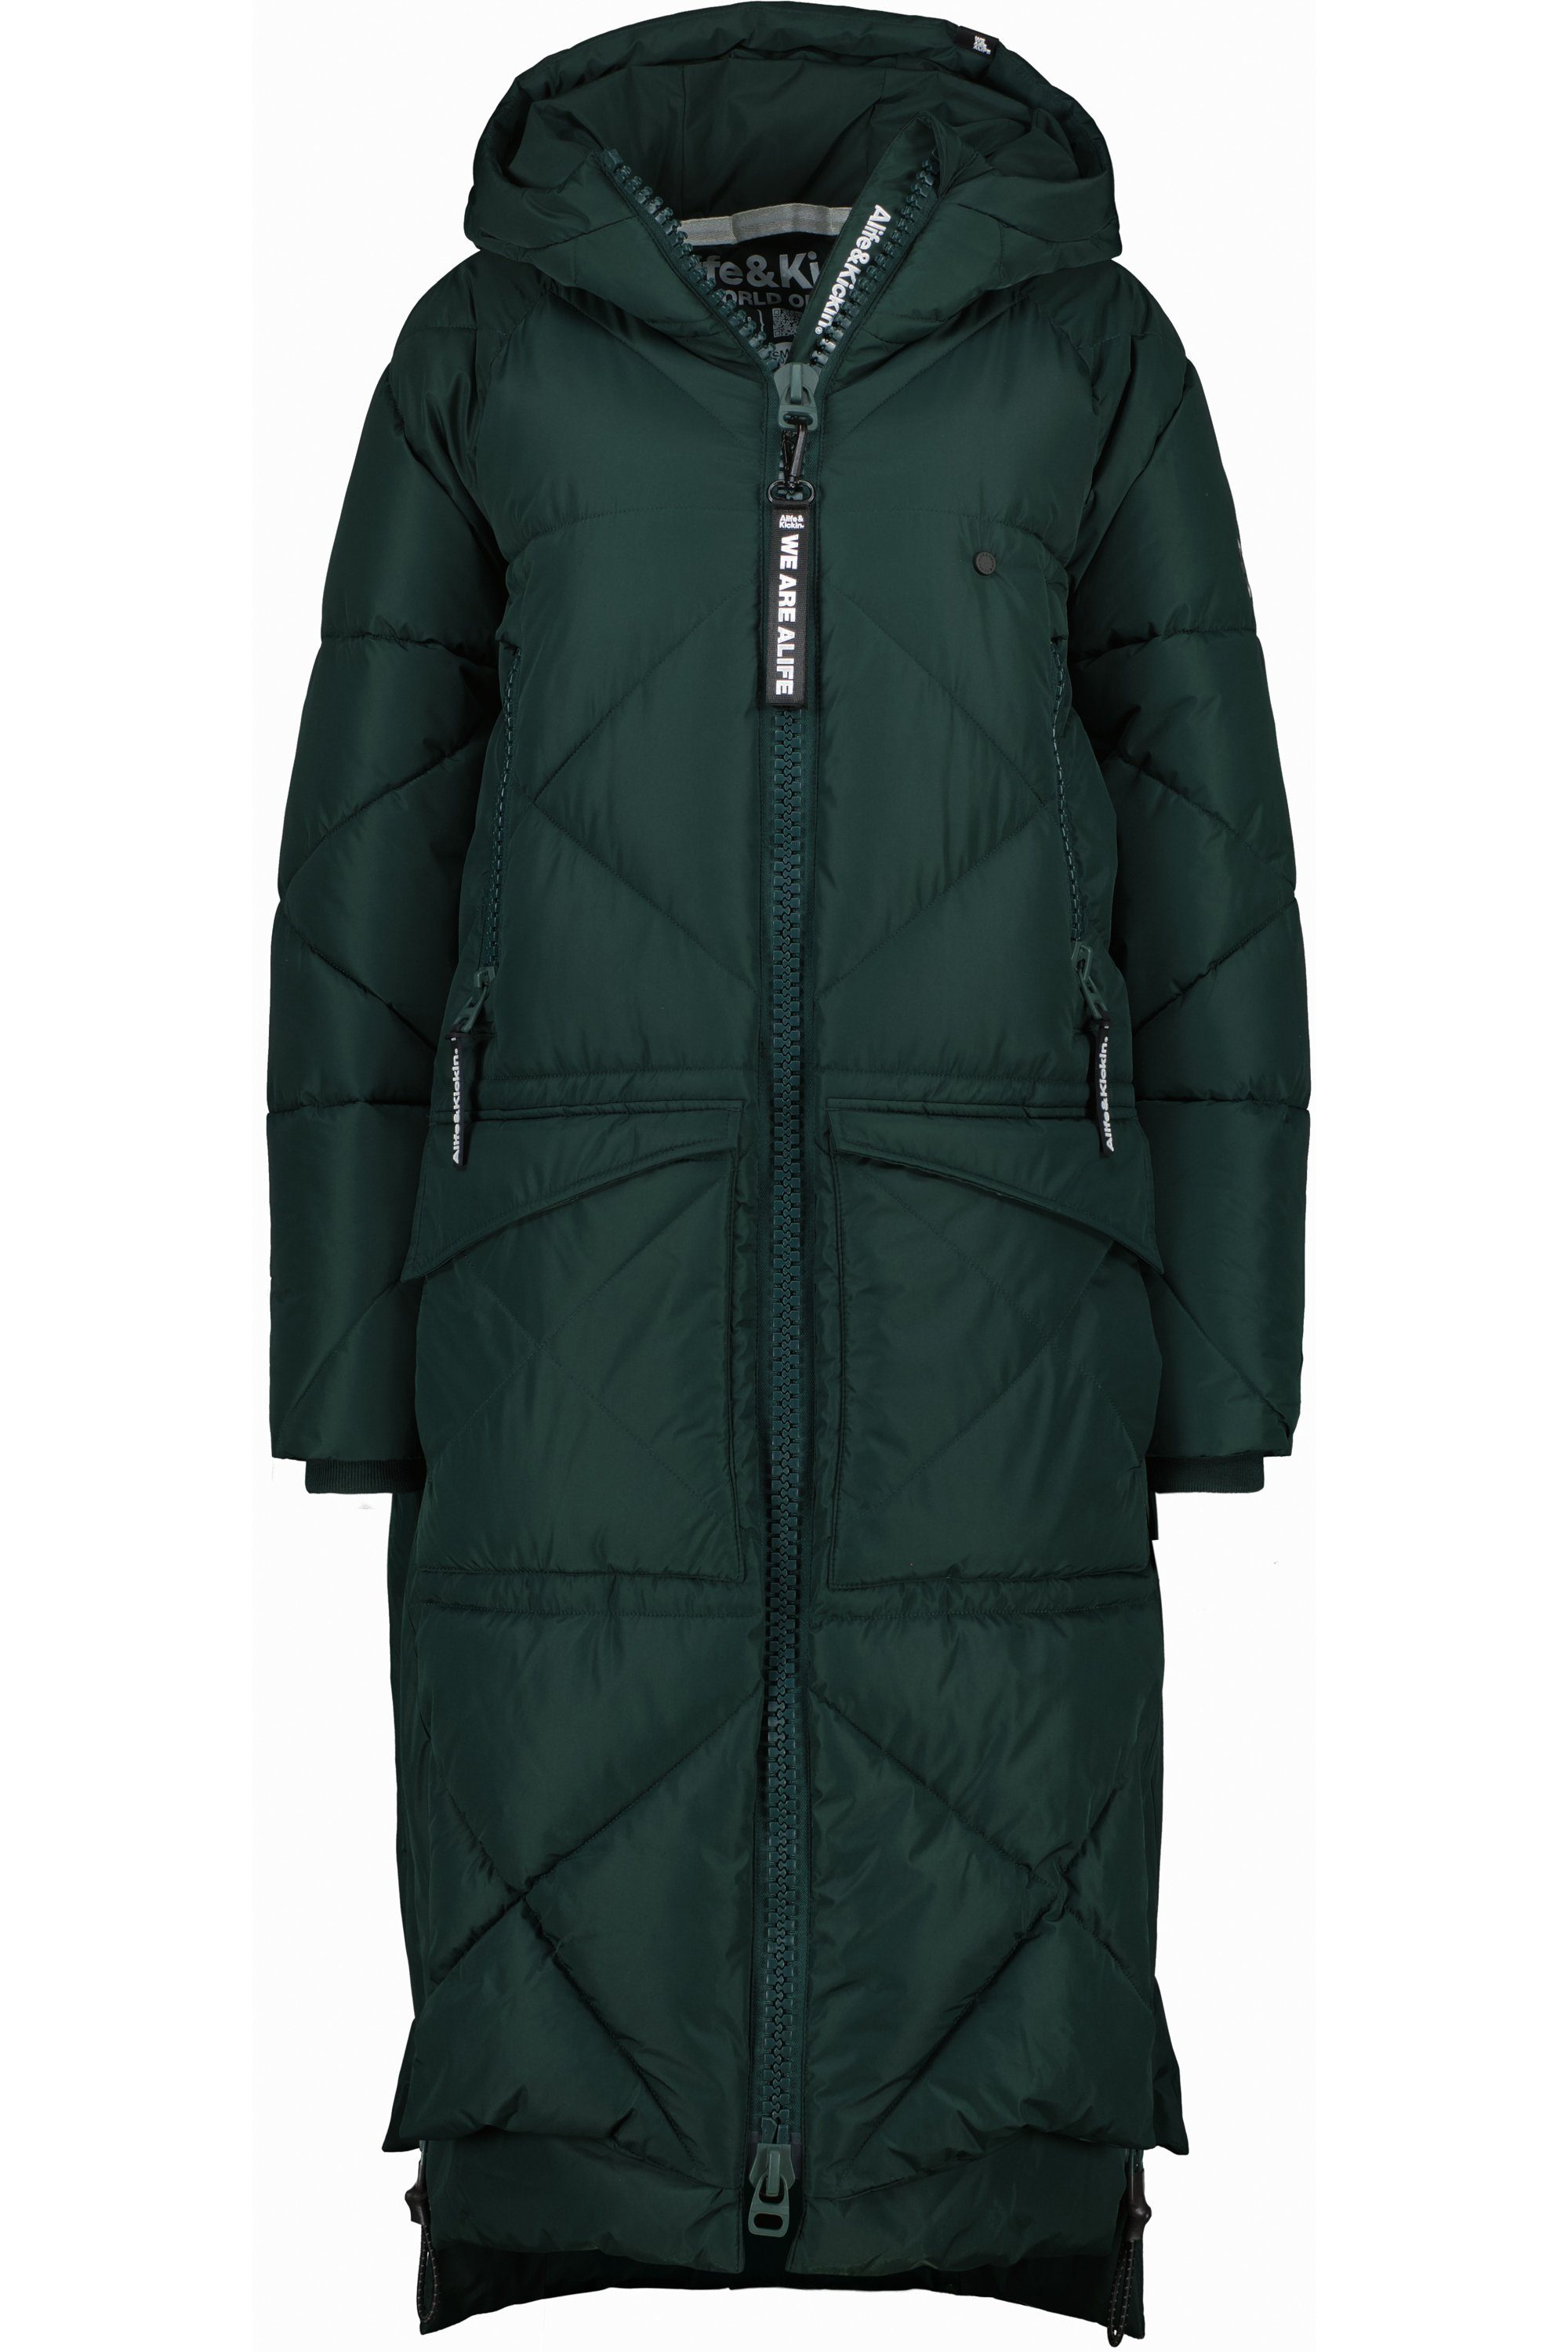 Damen Alife forest Coat dark RitaAK Jacke Winterjacke Kickin & Puffer Winterjacke, A